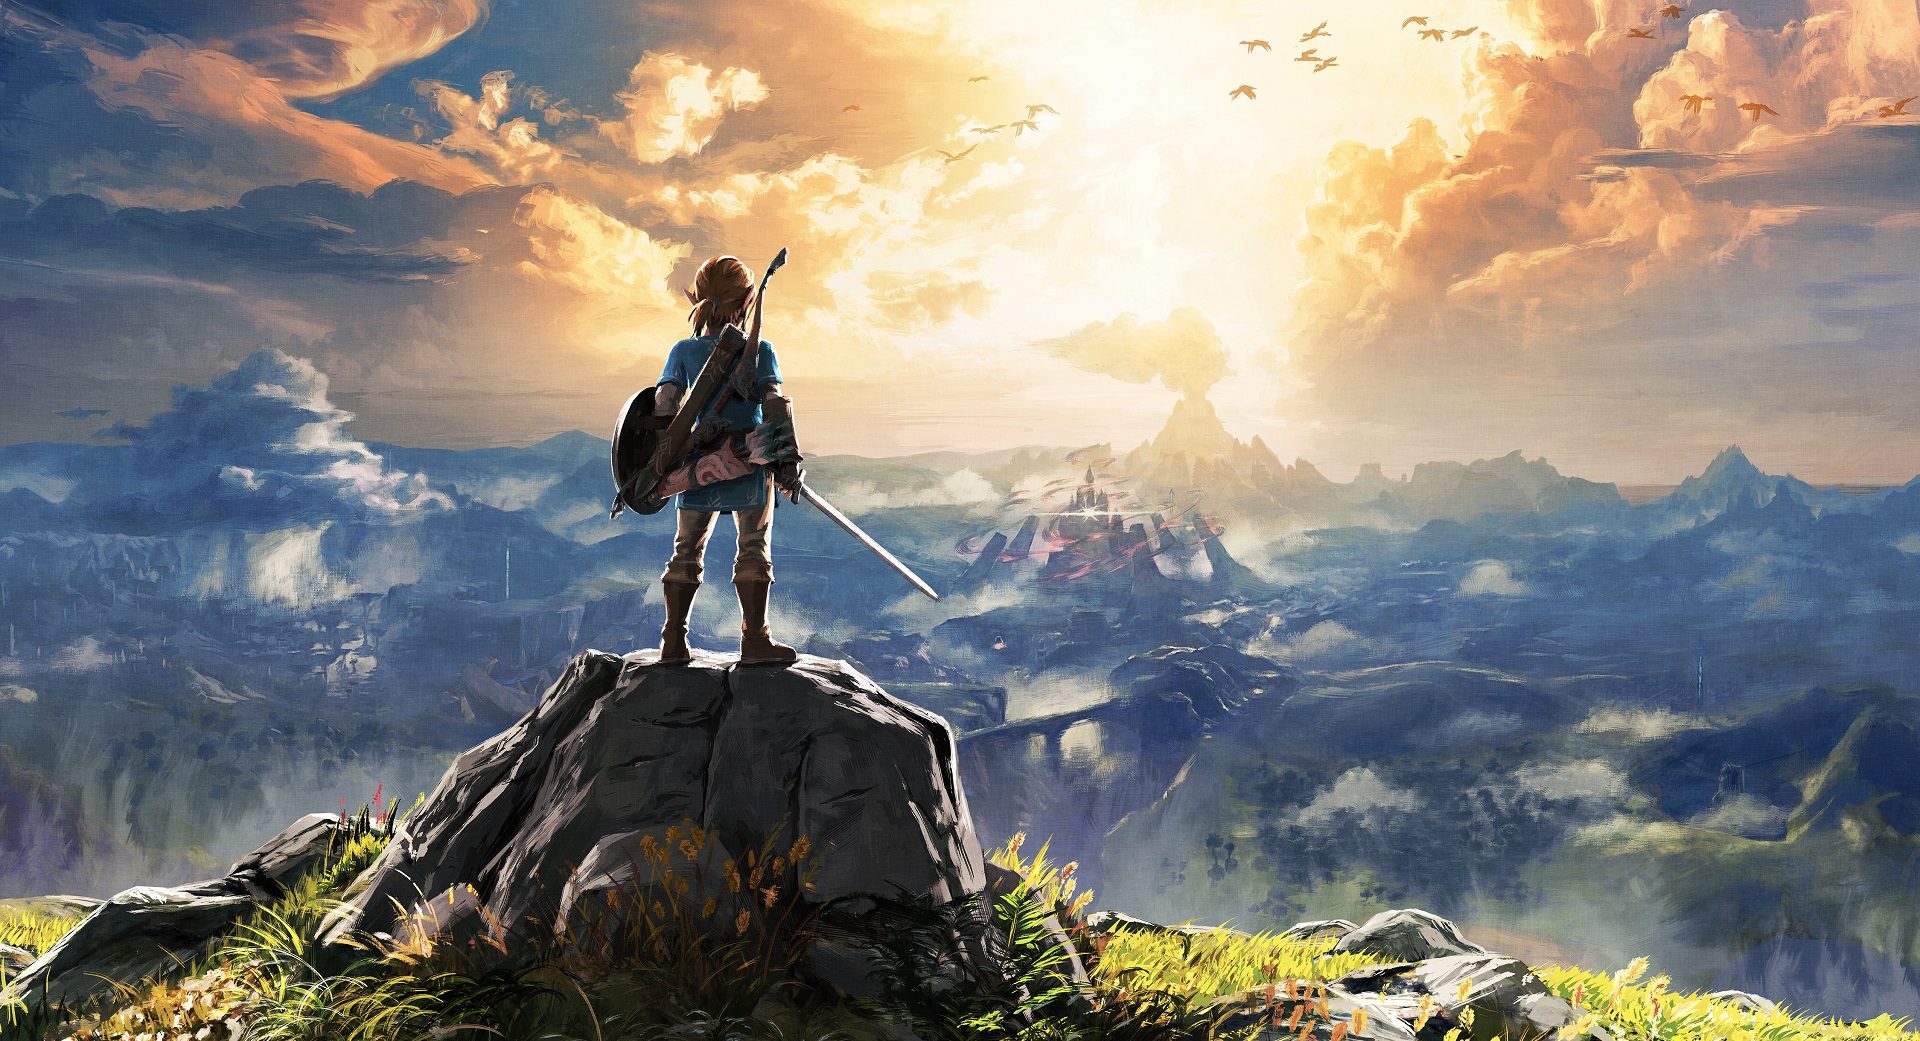 Legend Of Zelda: Breath Of The Wild HD wallpapers, Desktop wallpaper - most viewed